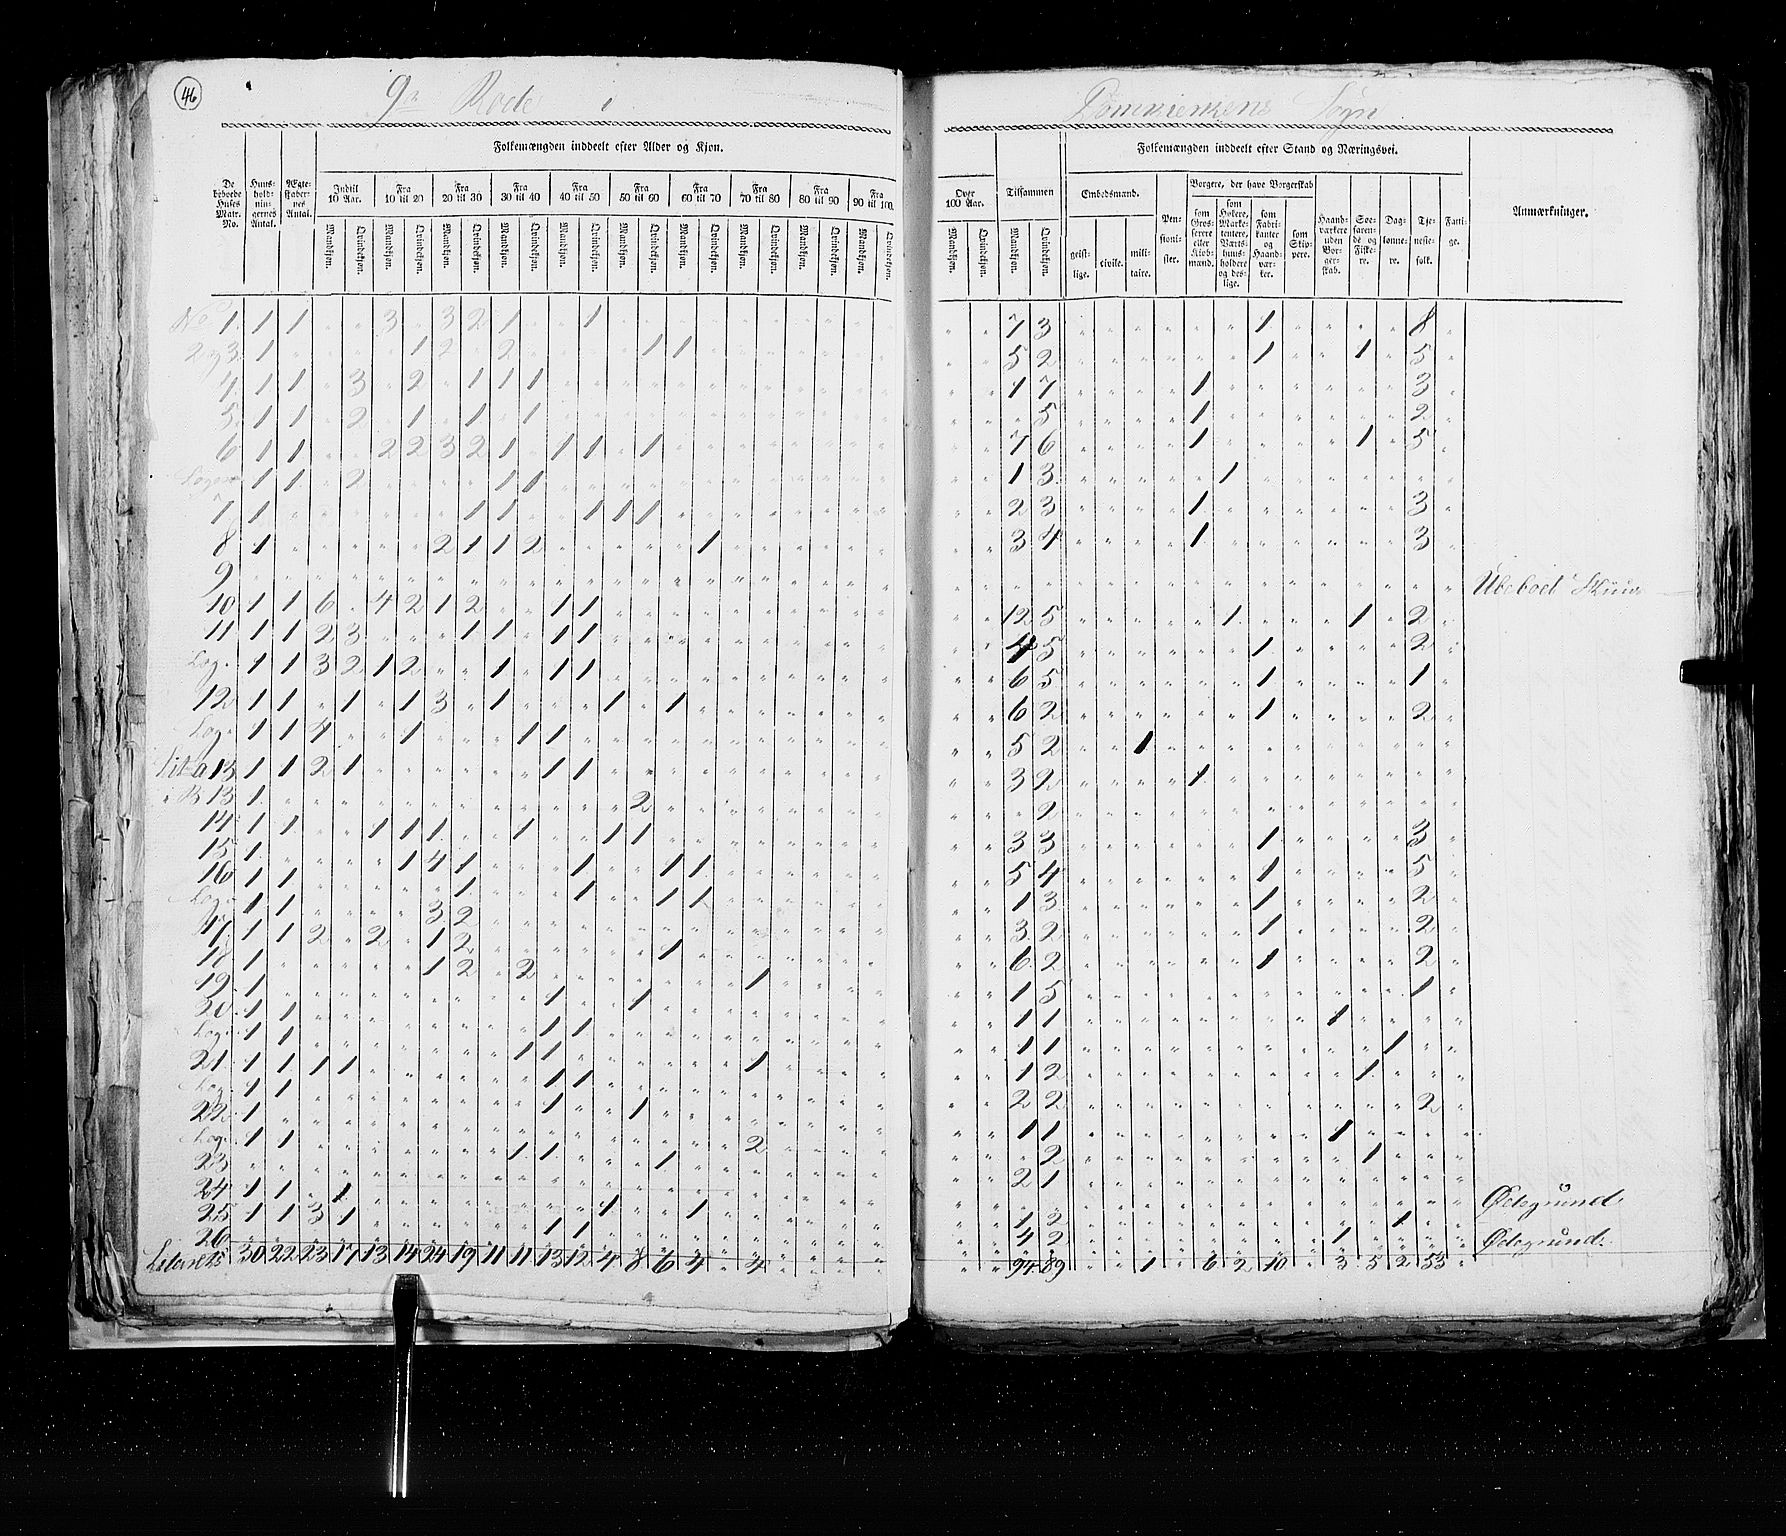 RA, Census 1825, vol. 22: Bergen, 1825, p. 46